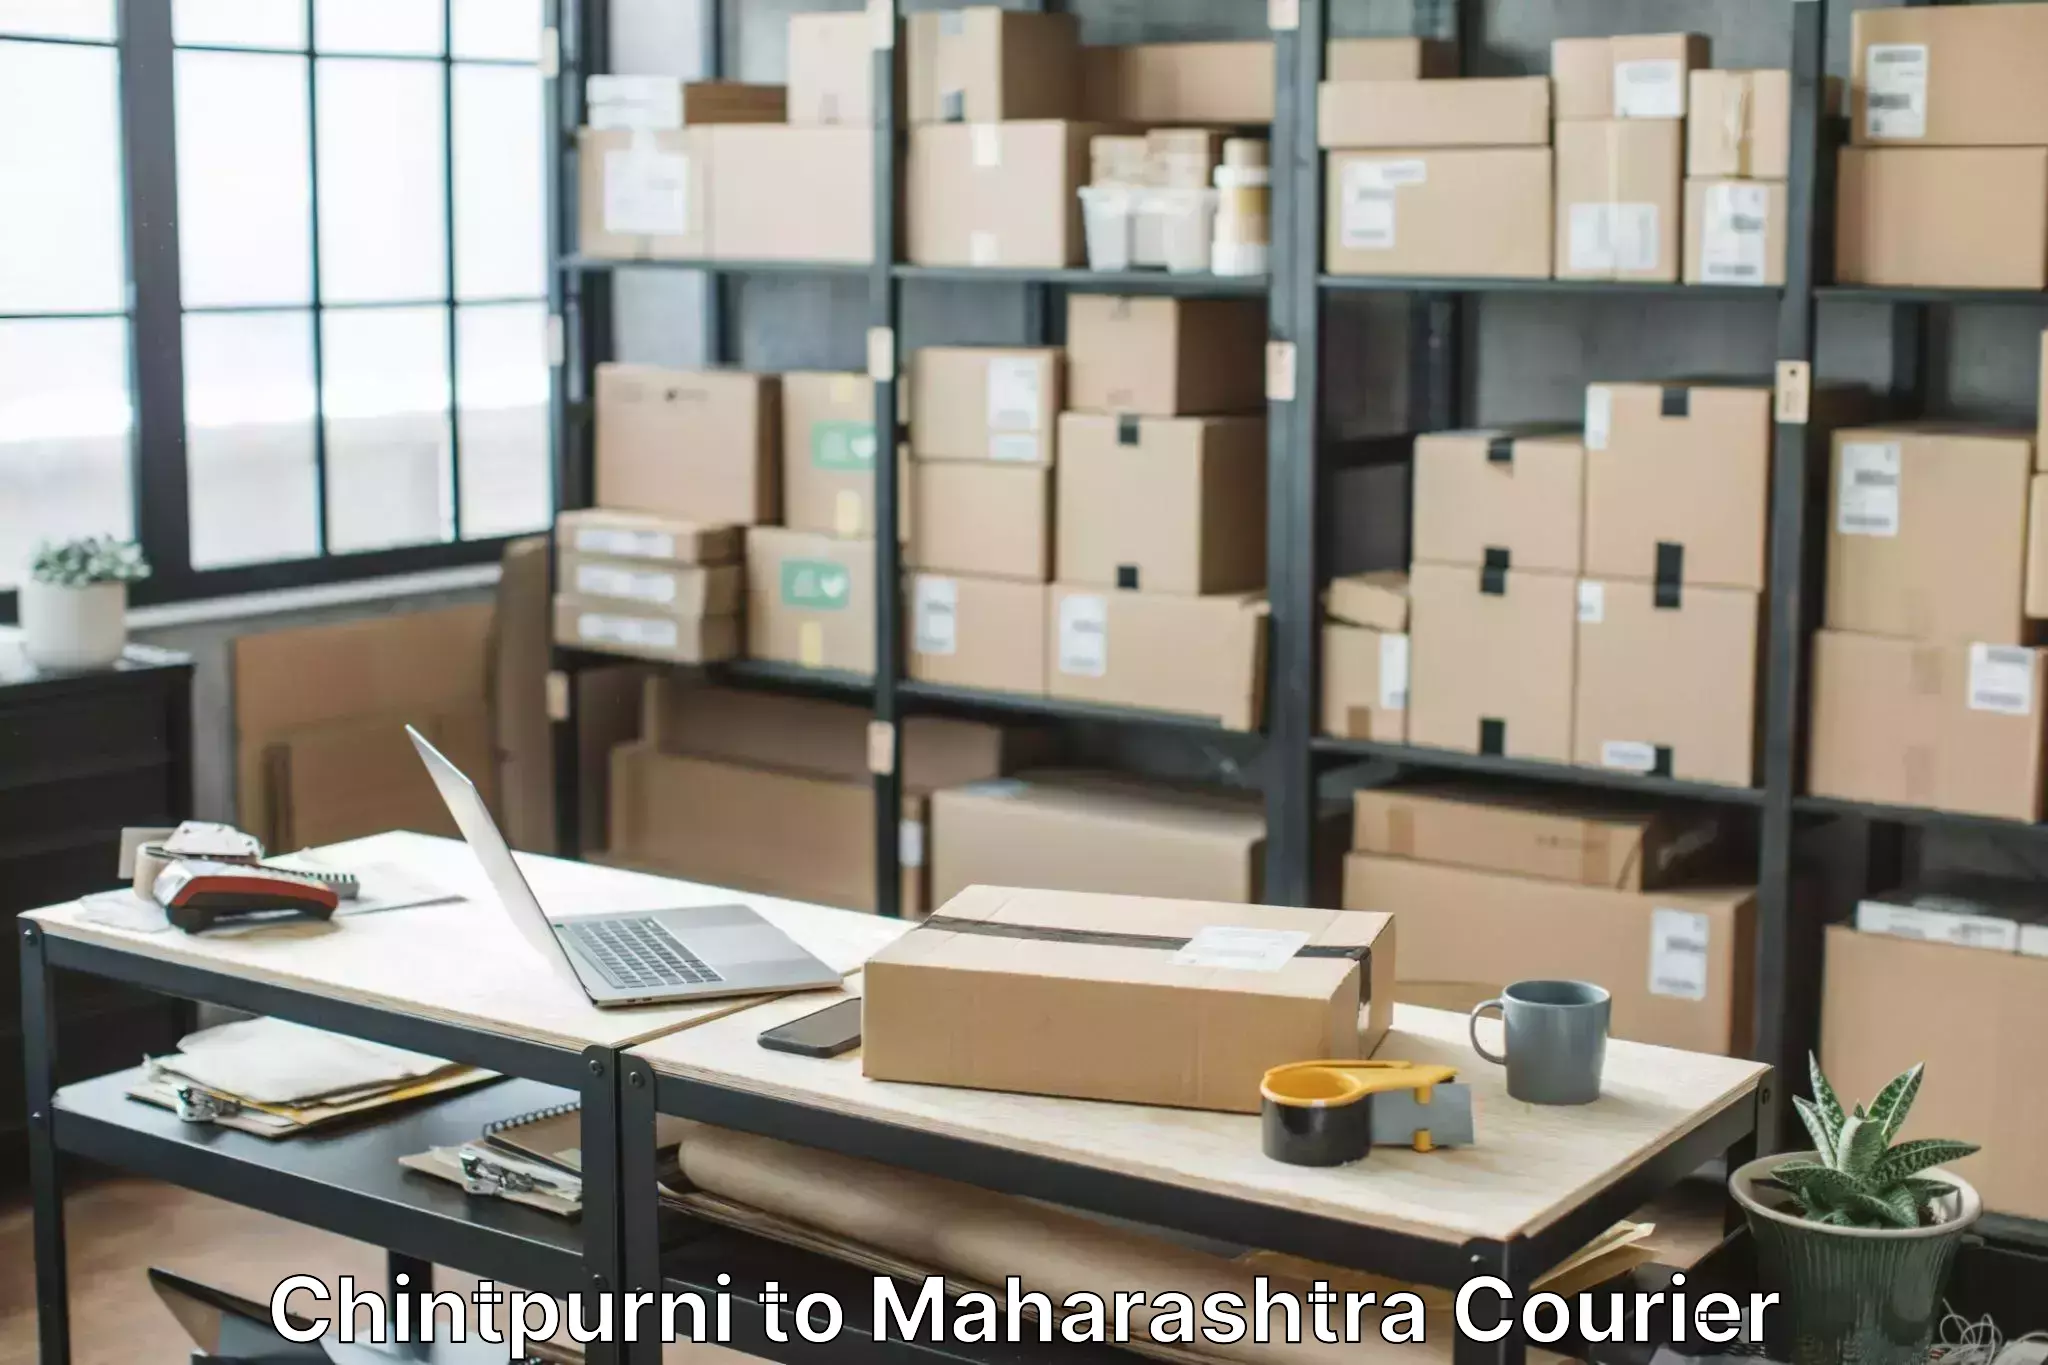 Furniture moving service Chintpurni to Maharashtra